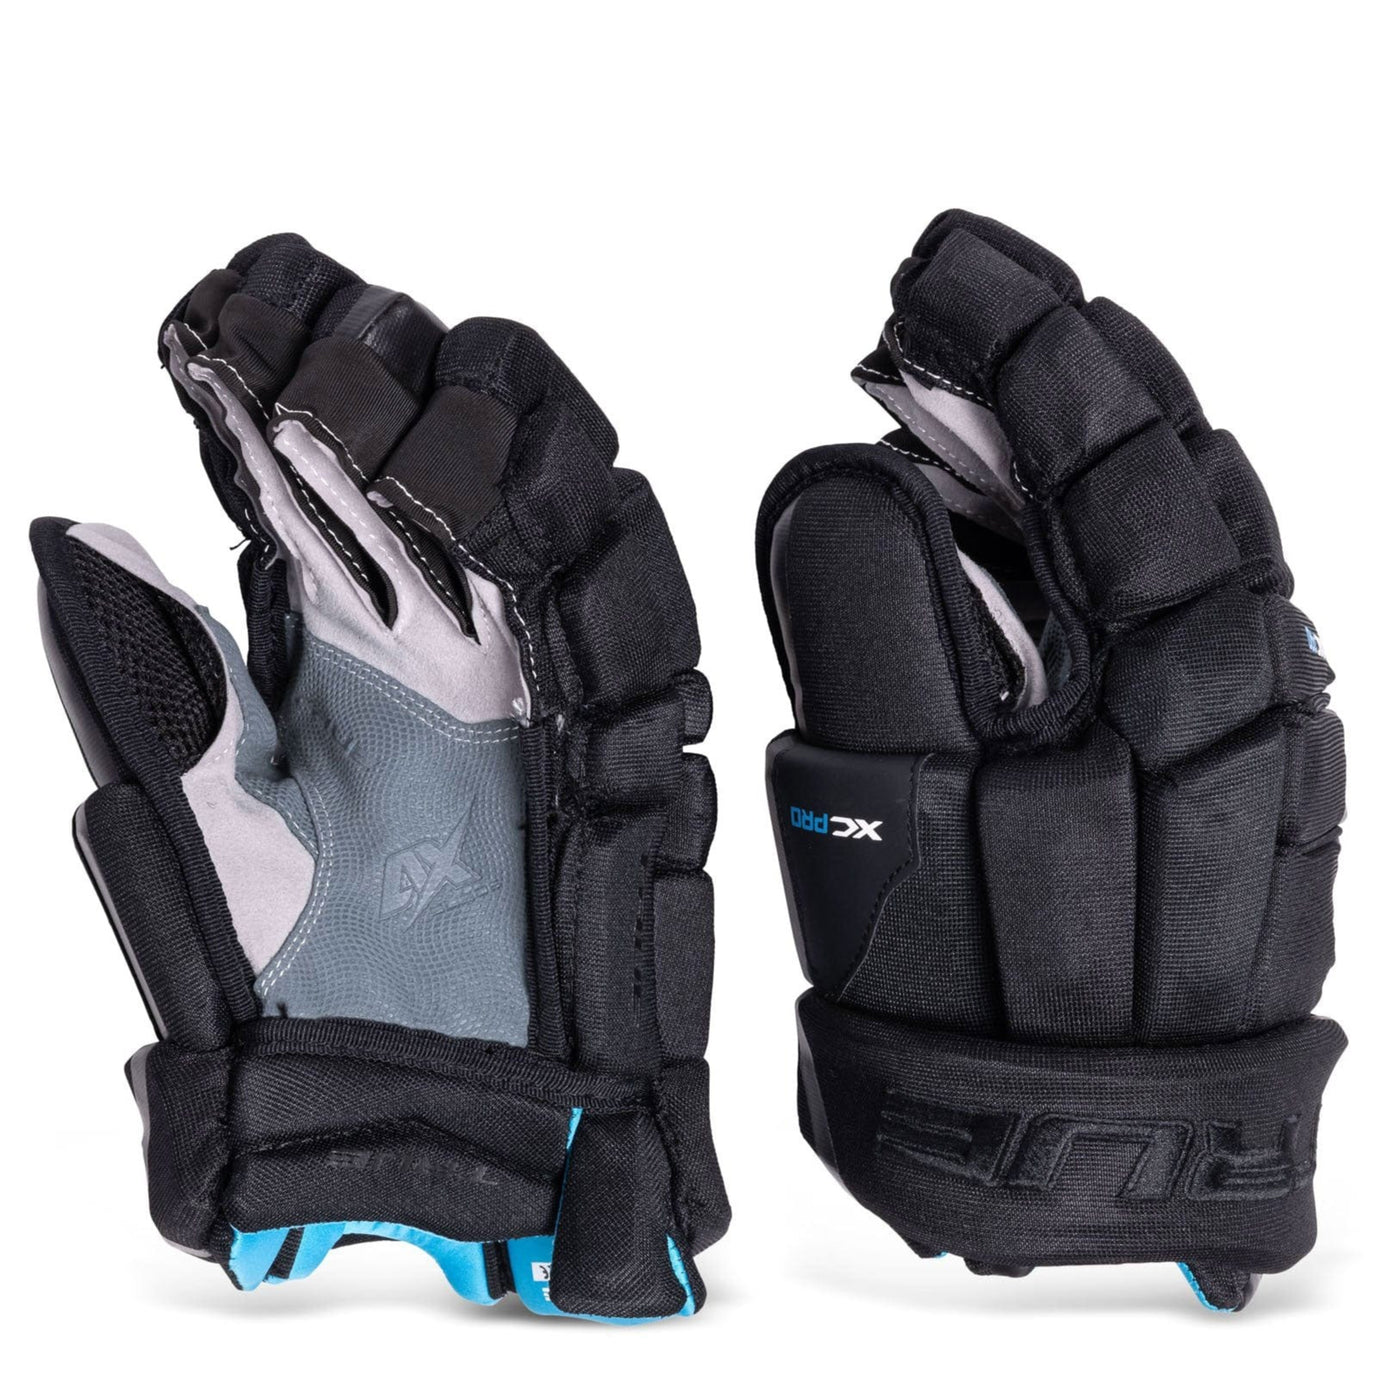 TRUE XC Pro Junior Hockey Gloves